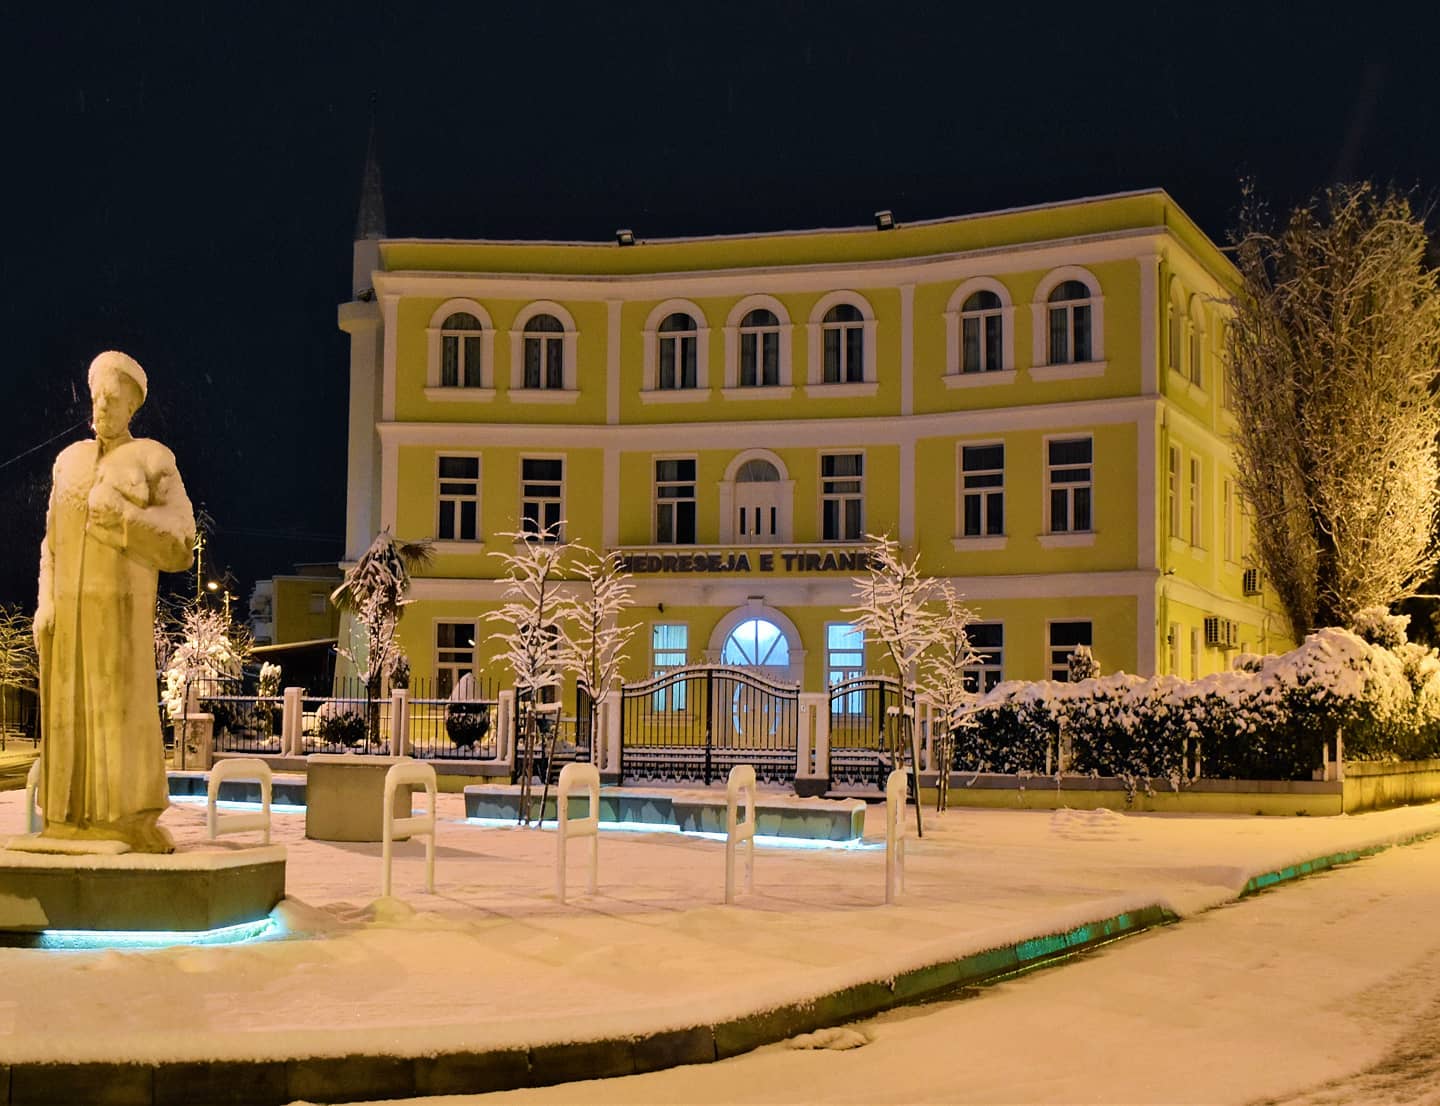 Madrasa of Tirana